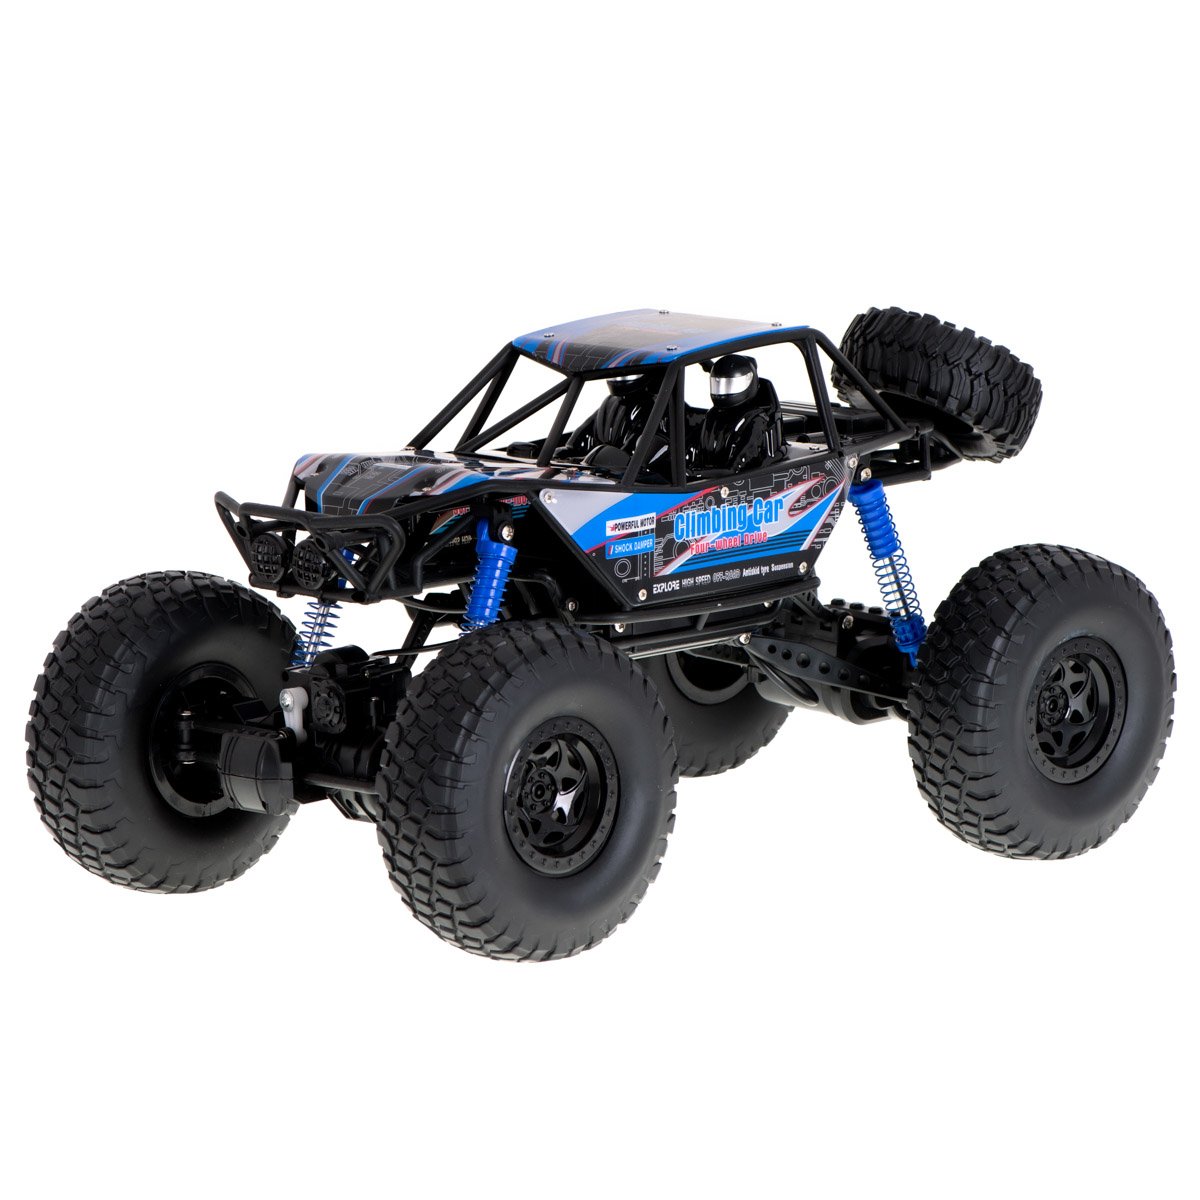 RoGer RC Crawler Climbing Rotaļu Automašīna 1:10 / 4WD / 48cm RO-6704-1 (5903039717633) Radiovadāmā rotaļlieta